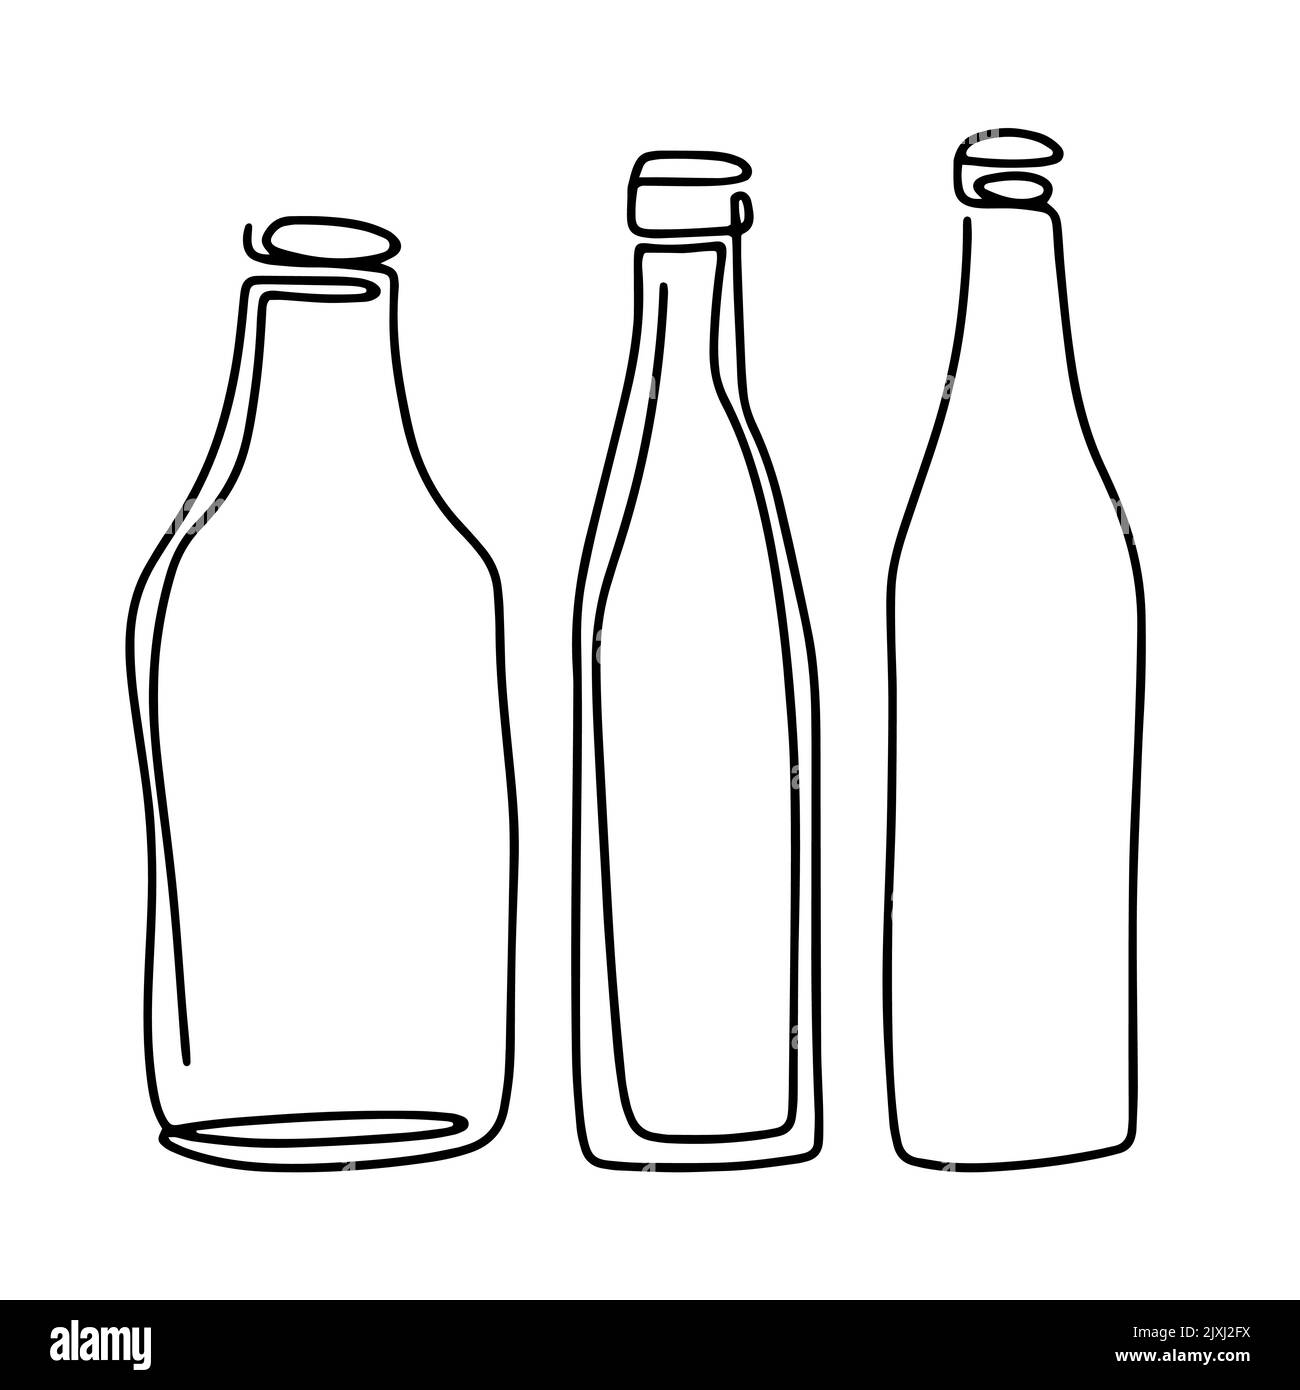 Jeu de bouteilles en verre art. Récipients Contour pour liquides et boissons. Illustration vectorielle isolée simple noire pour boire de la verrerie Illustration de Vecteur